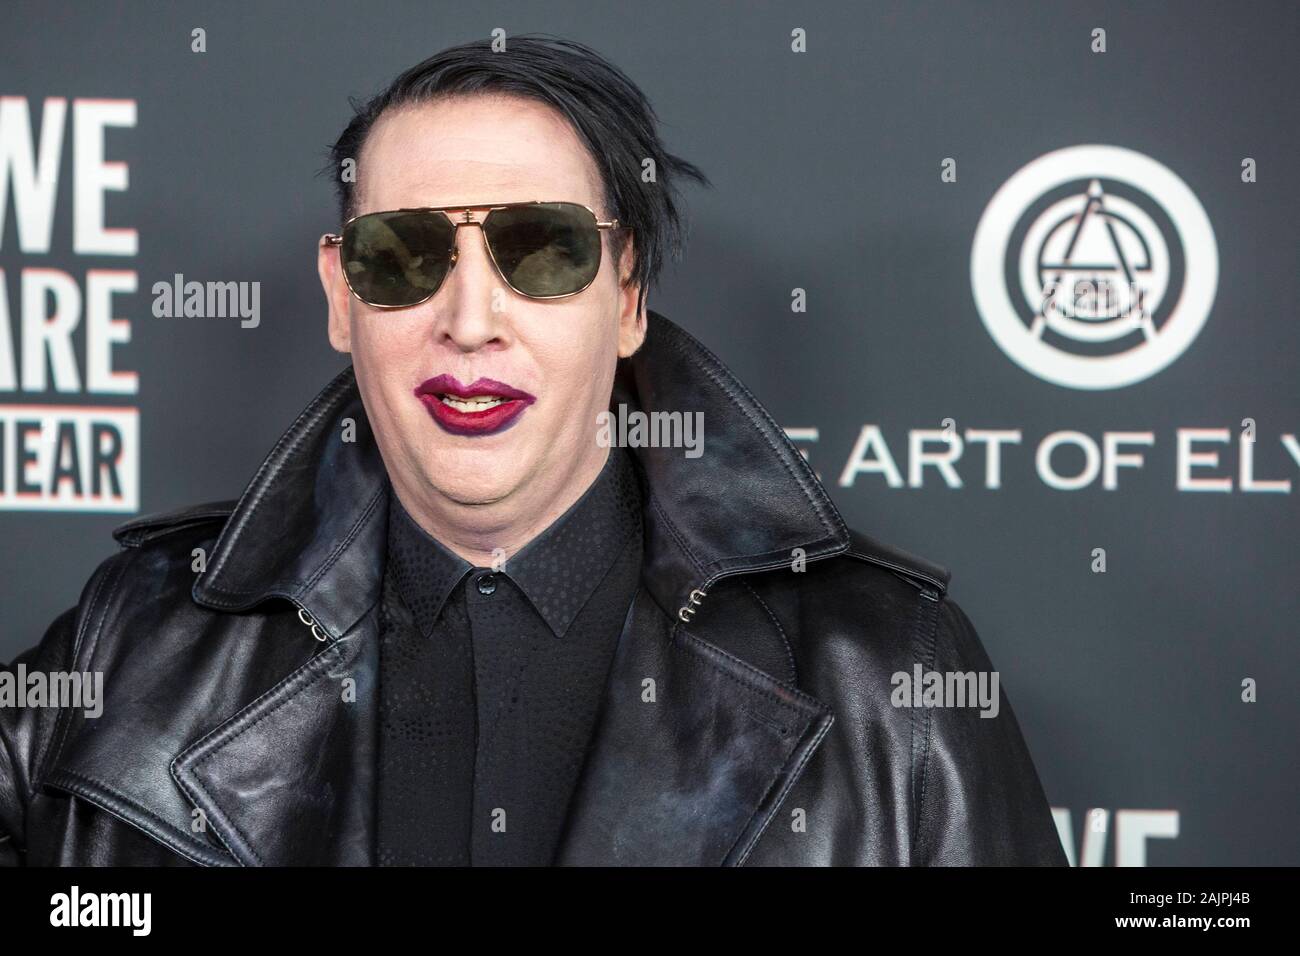 Los Angeles, USA. 08Th Jan, 2020. Marilyn Manson participe à l'Art de l'Elysium's 13th Annual Black Tie expérience artistique "Heaven" au Palladium à Hollywood, Los Angeles, Californie, USA, le 04 janvier 2020. | conditions dans le monde entier : dpa Crédit photo alliance/Alamy Live News Banque D'Images